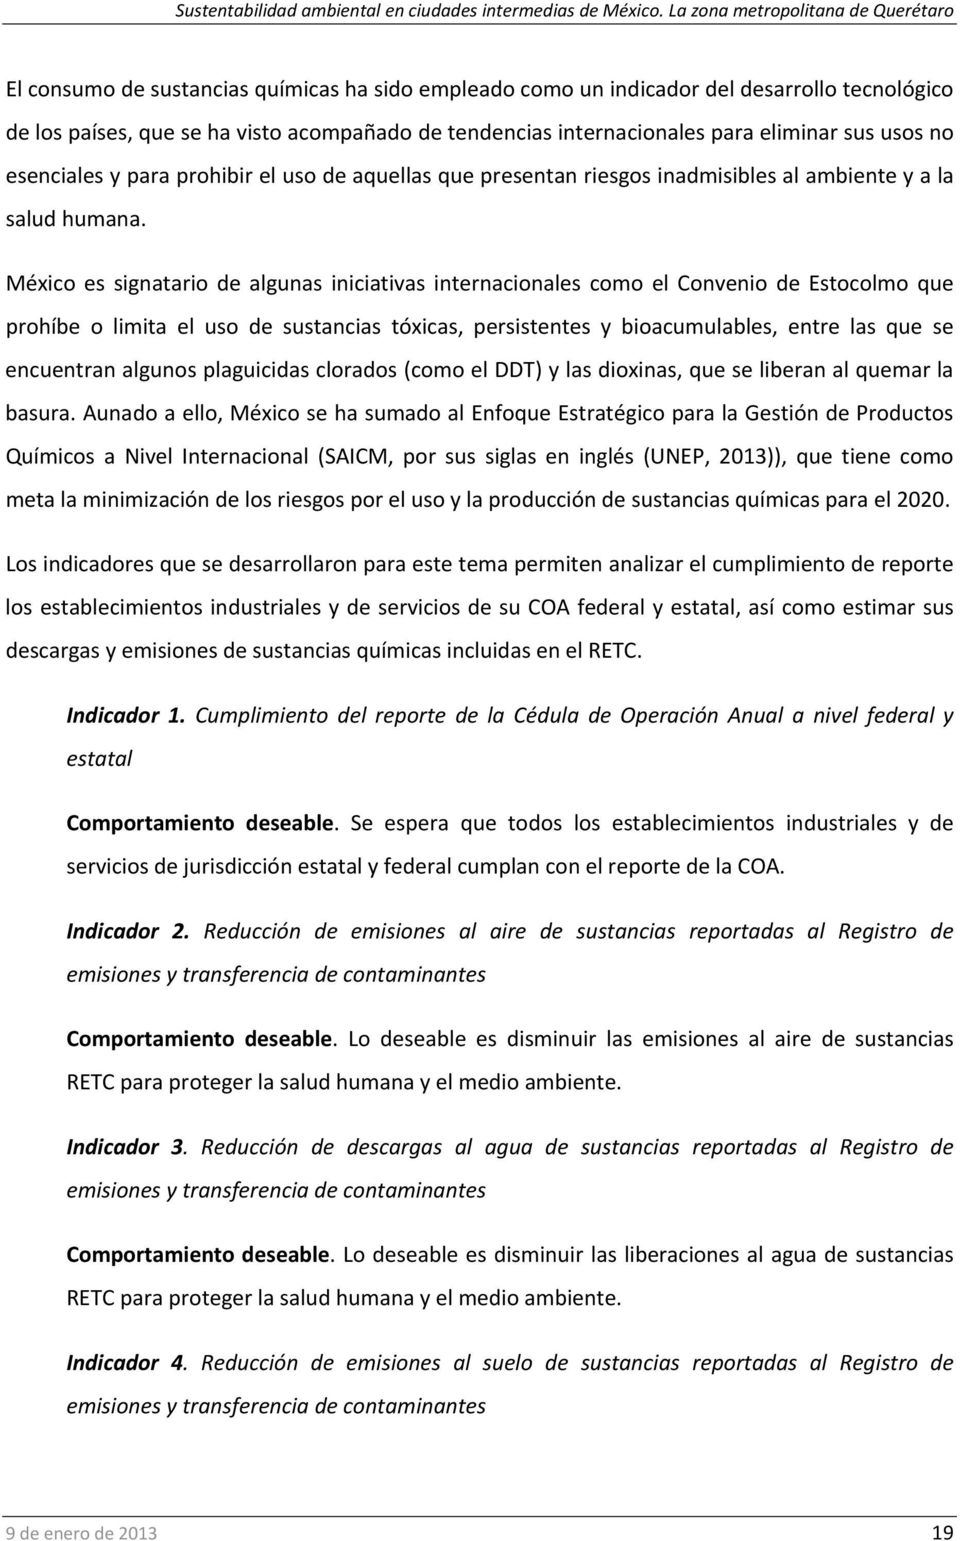 México es signatario de algunas iniciativas internacionales como el Convenio de Estocolmo que prohíbe o limita el uso de sustancias tóxicas, persistentes y bioacumulables, entre las que se encuentran